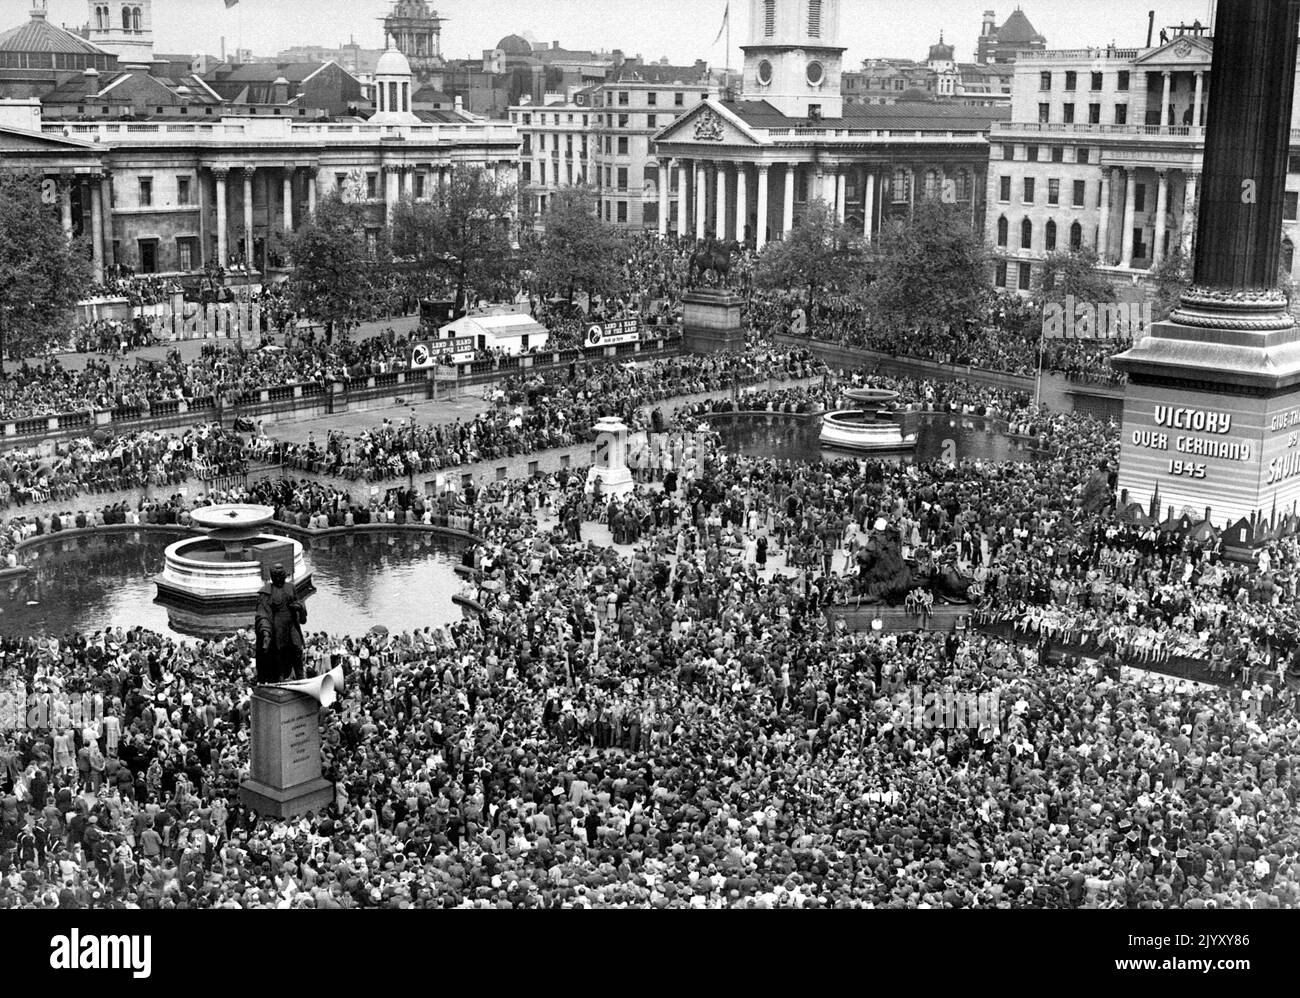 1945: Datei-Foto vom 1945. Mai von riesigen Menschenmengen auf dem Trafalgar Square, die den VE-Tag (Sieg in Europa) in London feiern, der das Ende des Zweiten Weltkriegs in Europa und die Niederlage Nazi-Deutschlands markiert. Ausgabedatum: Donnerstag, 8. September 2022. Stockfoto